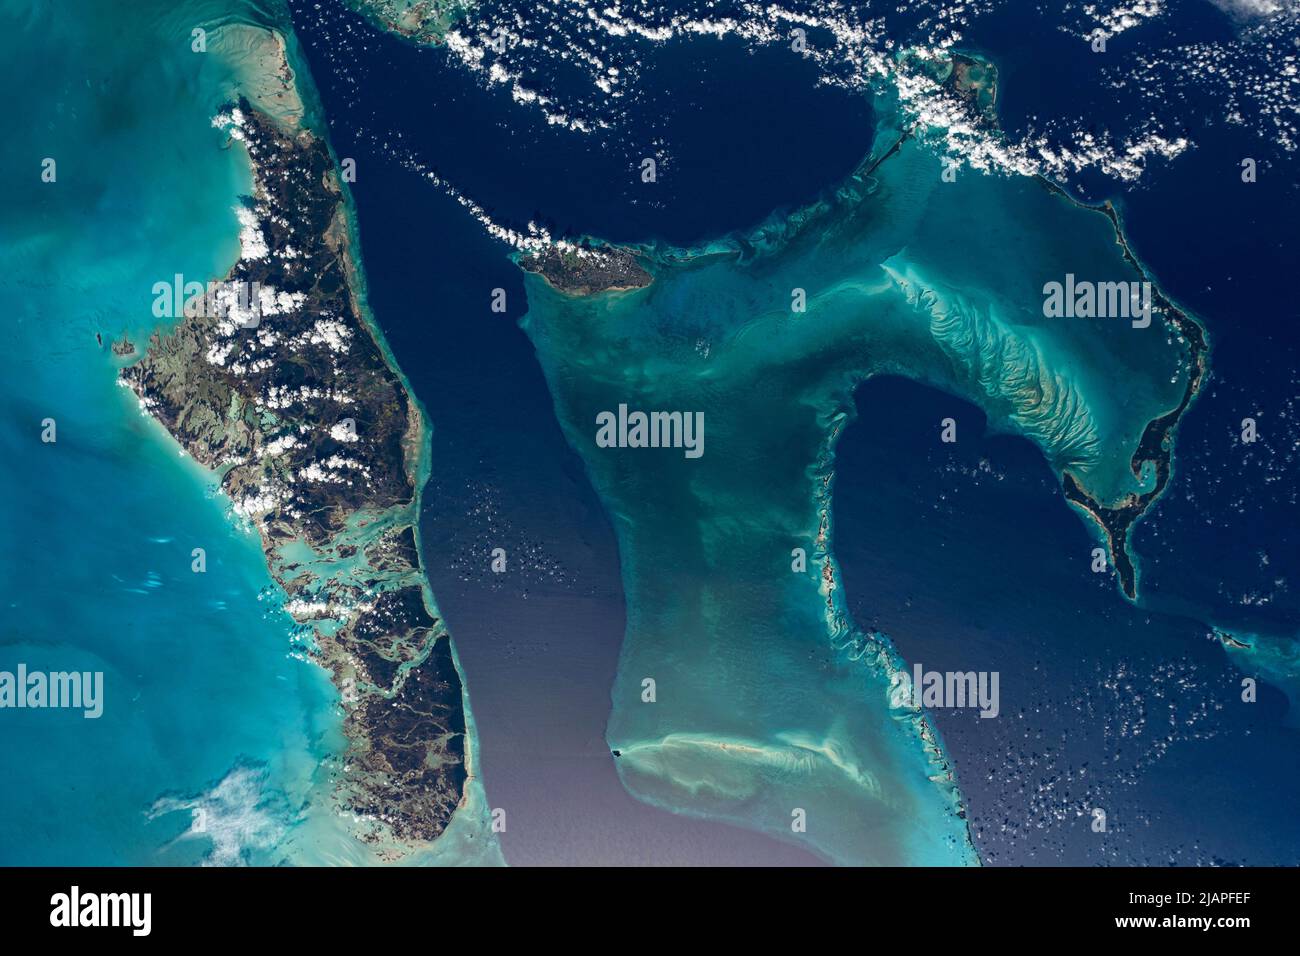 Le Bahamas (a sinistra), Nassau (al centro), Eleuthera (a destra). Una visione della Terra dalla Stazione spaziale Internazionale (ISS) 1 dicembre 2021 una versione ottimizzata e potenziata digitalmente di un'immagine NASA/ESA. Credito obbligatorio: NASA/ESA/M.Maure. NB: Limitazioni d'uso: Da non presentare come approvazione. Foto Stock